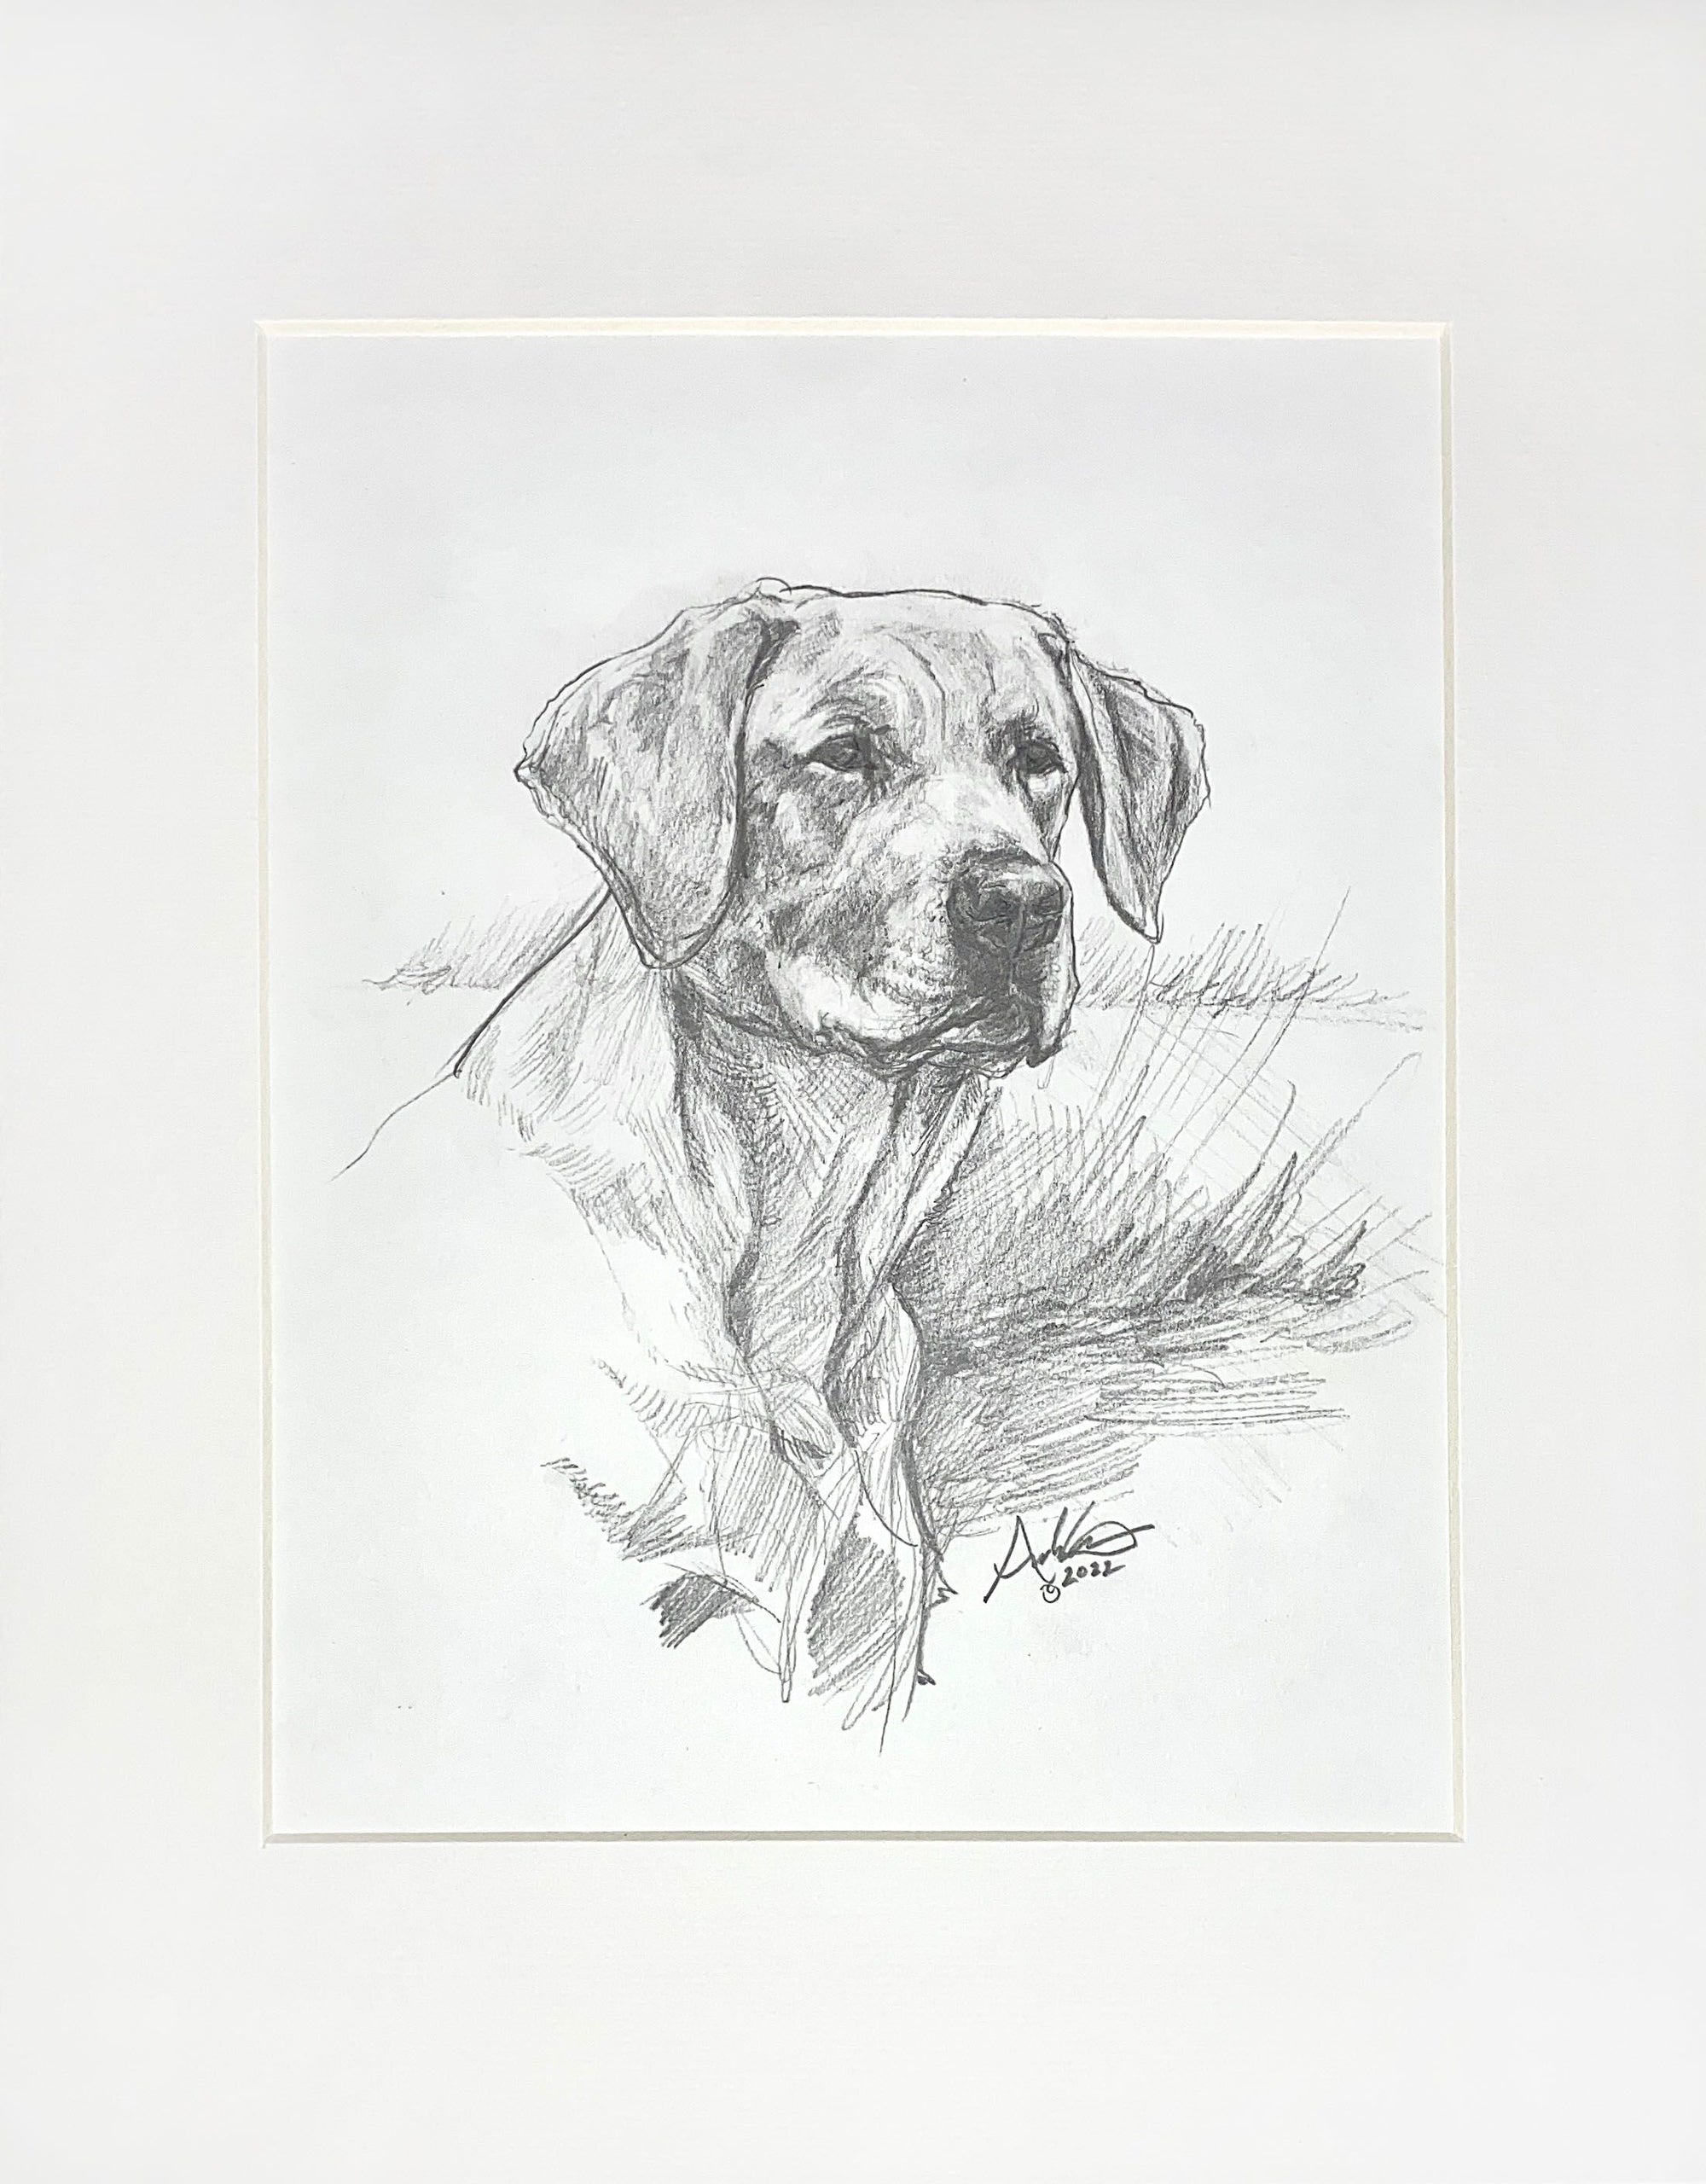 Labrador Retriever, Original Sketch, 8x10"